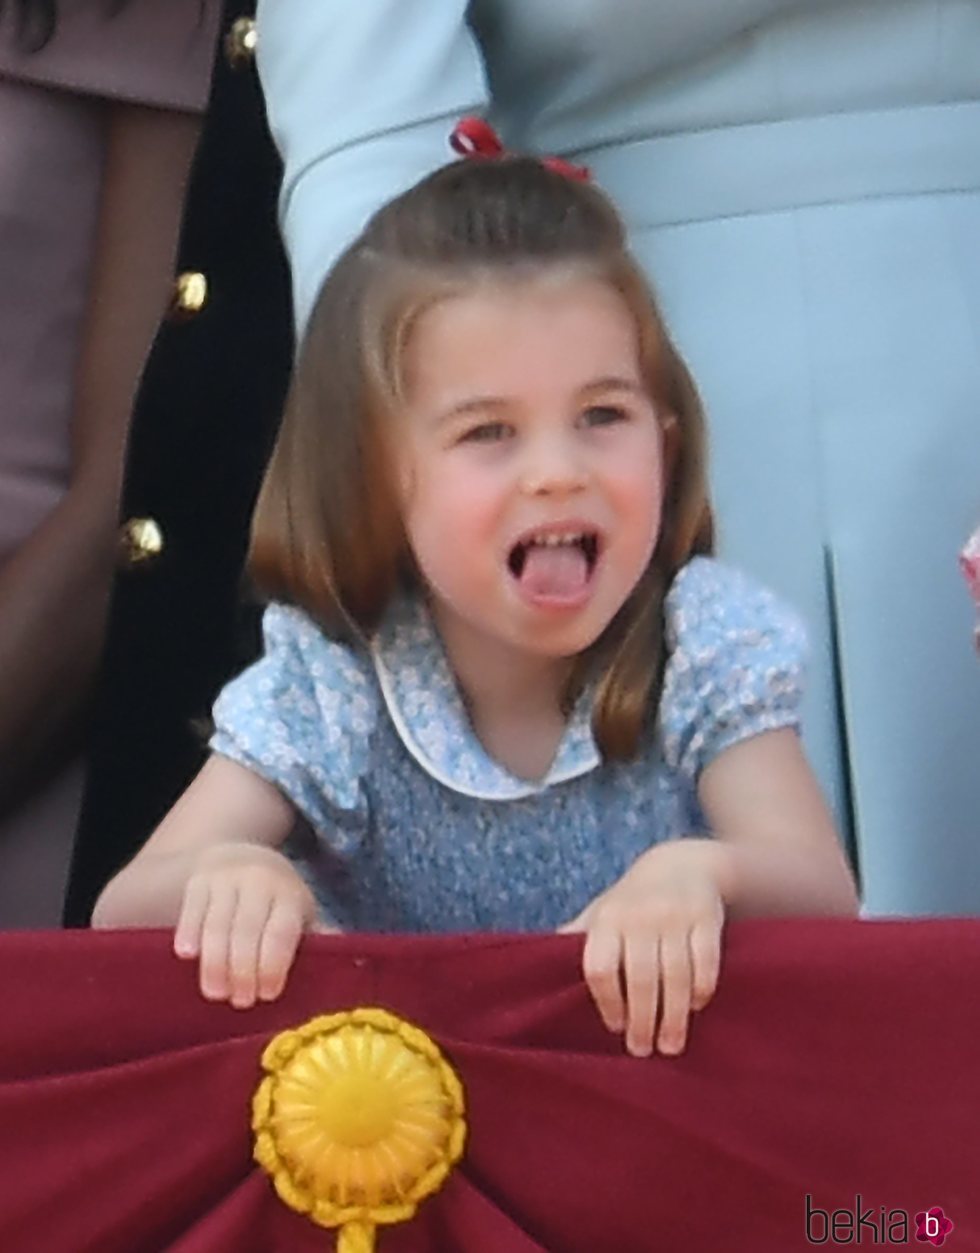 La Princesa Carlota de Cambridge en el balcón del Palacio de Buckingham en el Trooping The Colour 2018